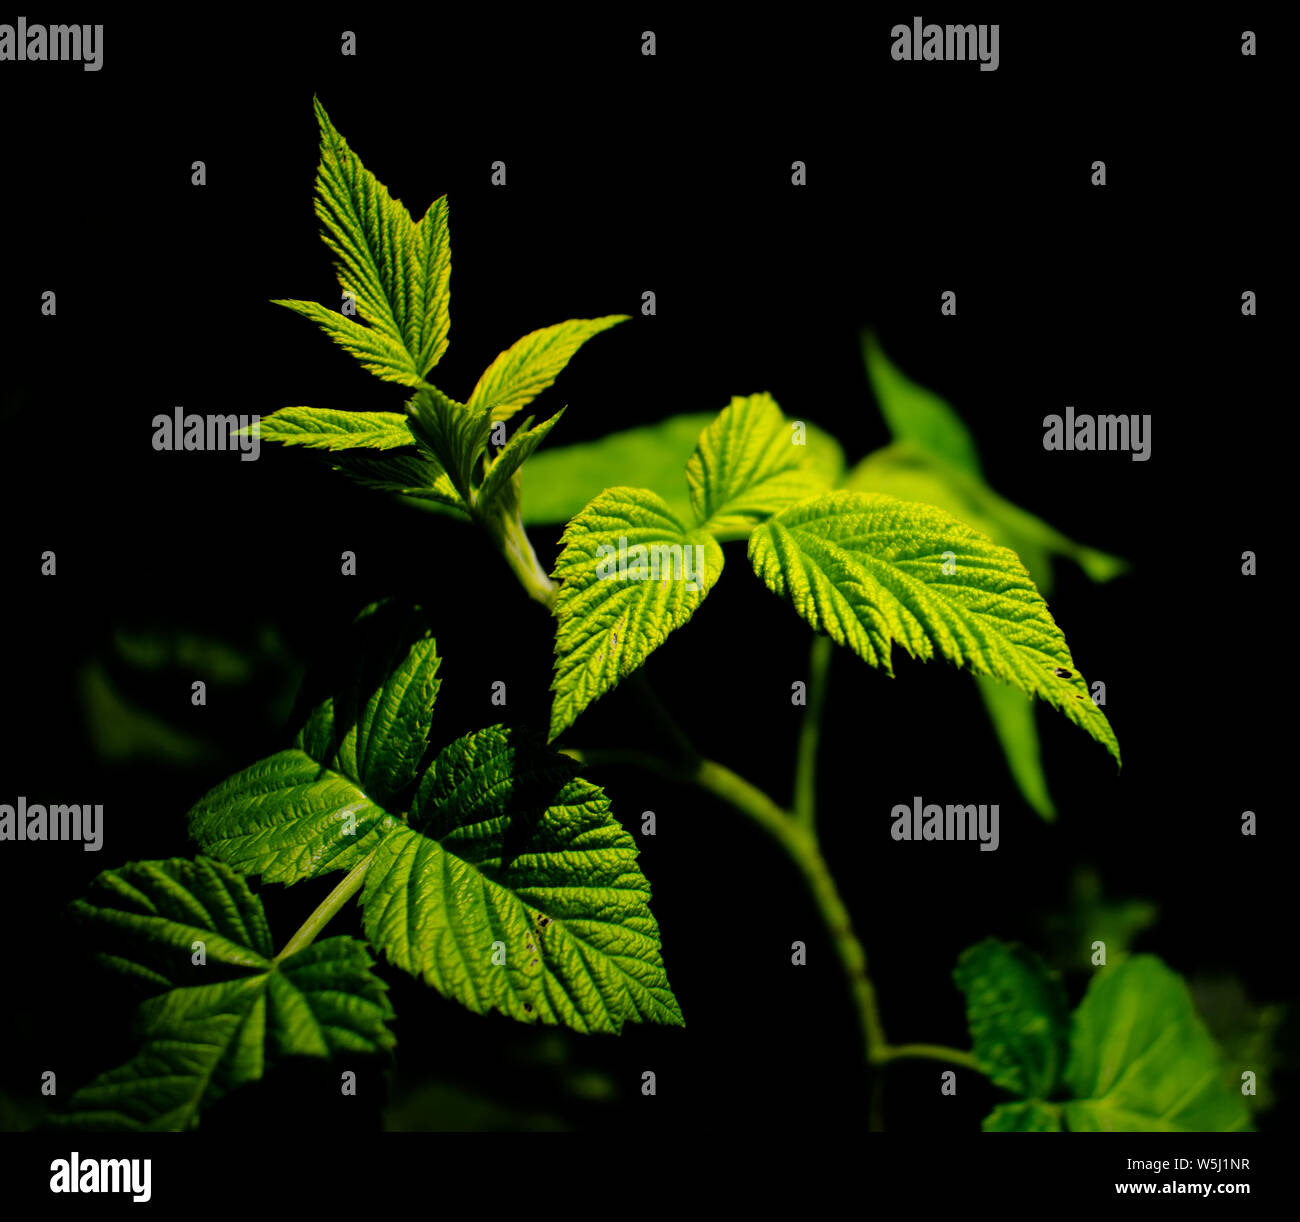 Hoher Kontrast Foto von einigen grünen Himbeere Obst Blätter mit einem dunklen Hintergrund. Medizin oder der Natur gestaltet. Stockfoto